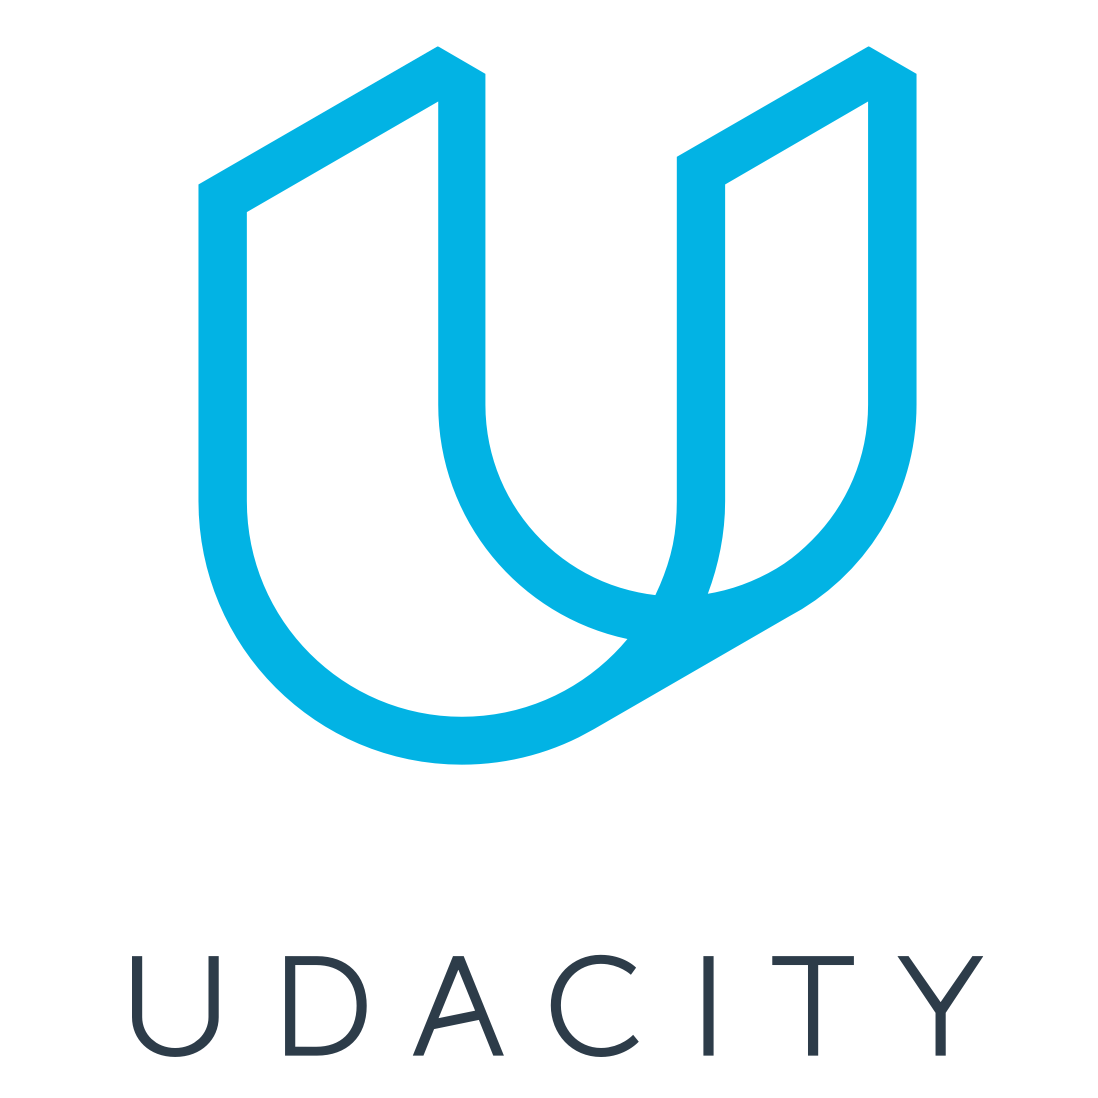 Udacity.com logo